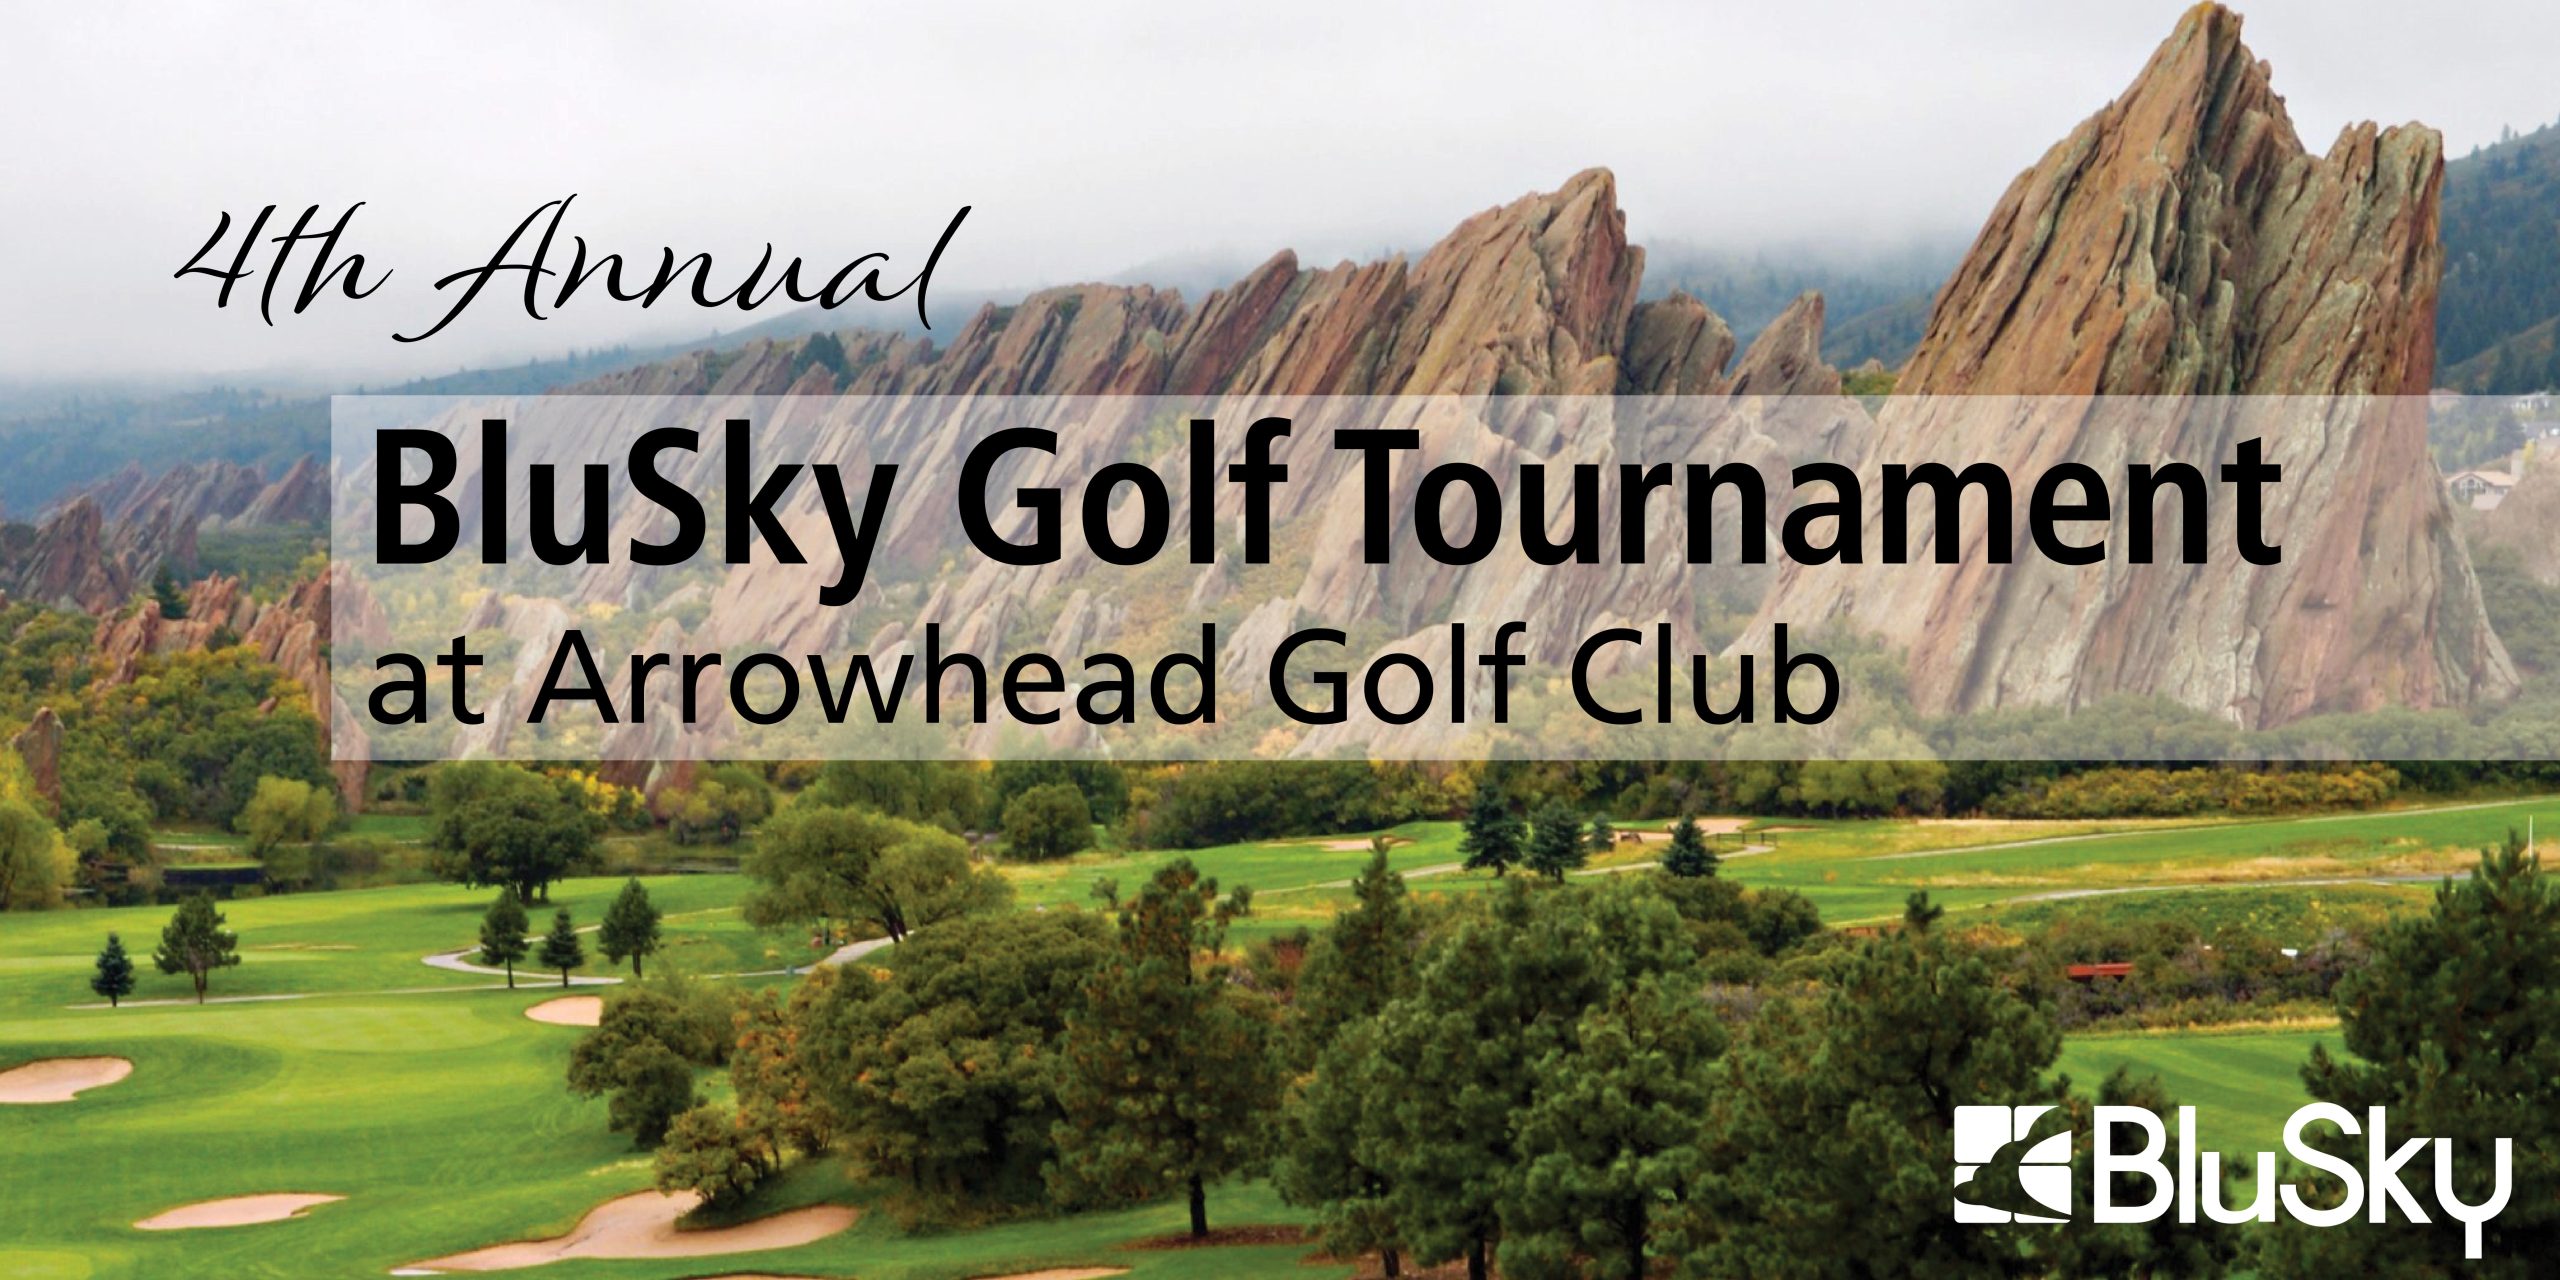 Denver BluSky Customer Appreciation Golf Tournament